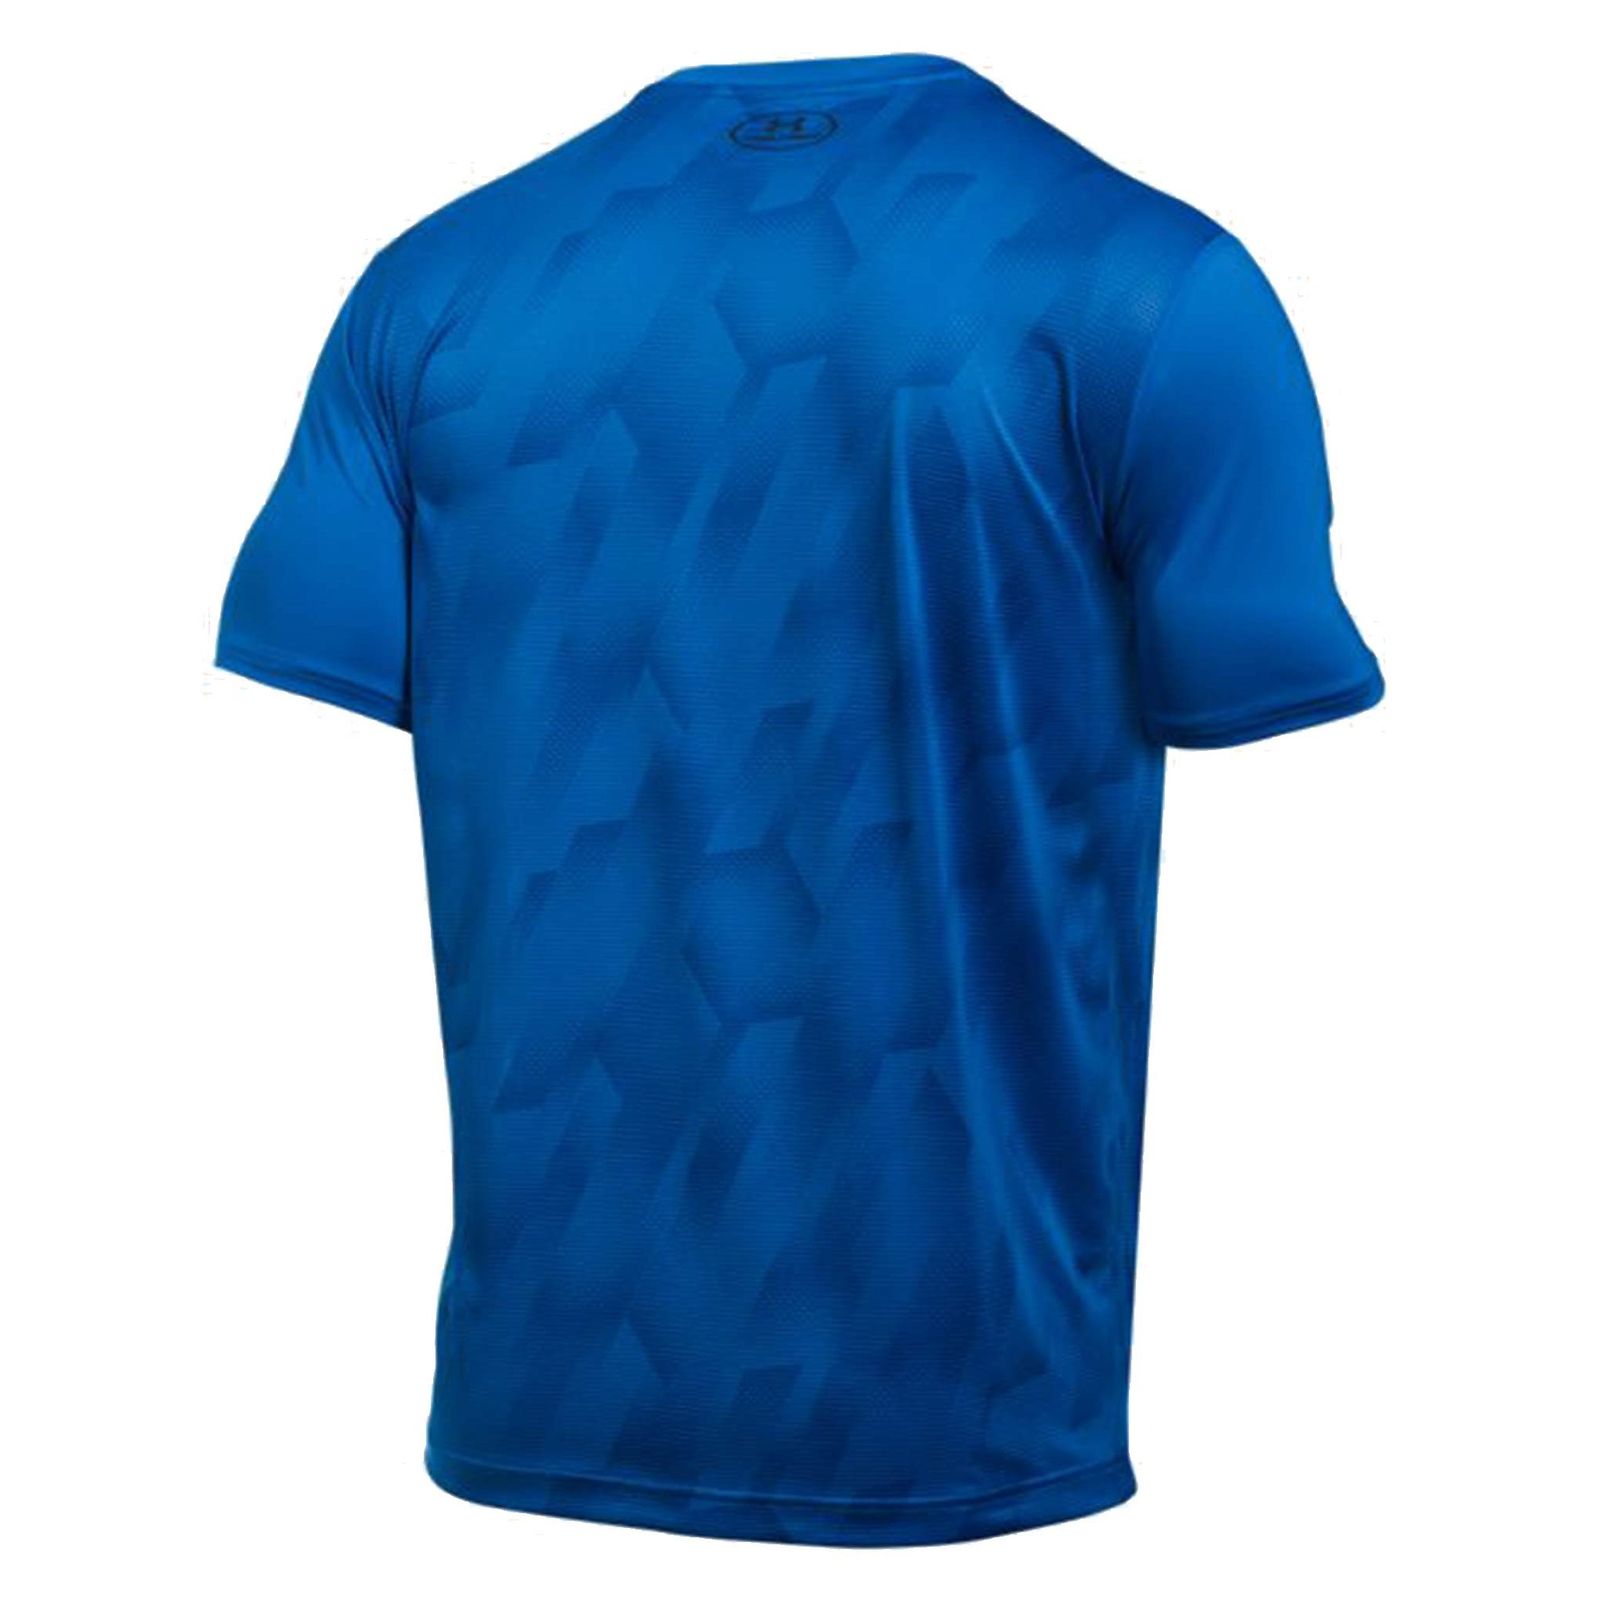 تی شرت ورزشی یقه گرد مردانه - آندر آرمور - آبي - 3